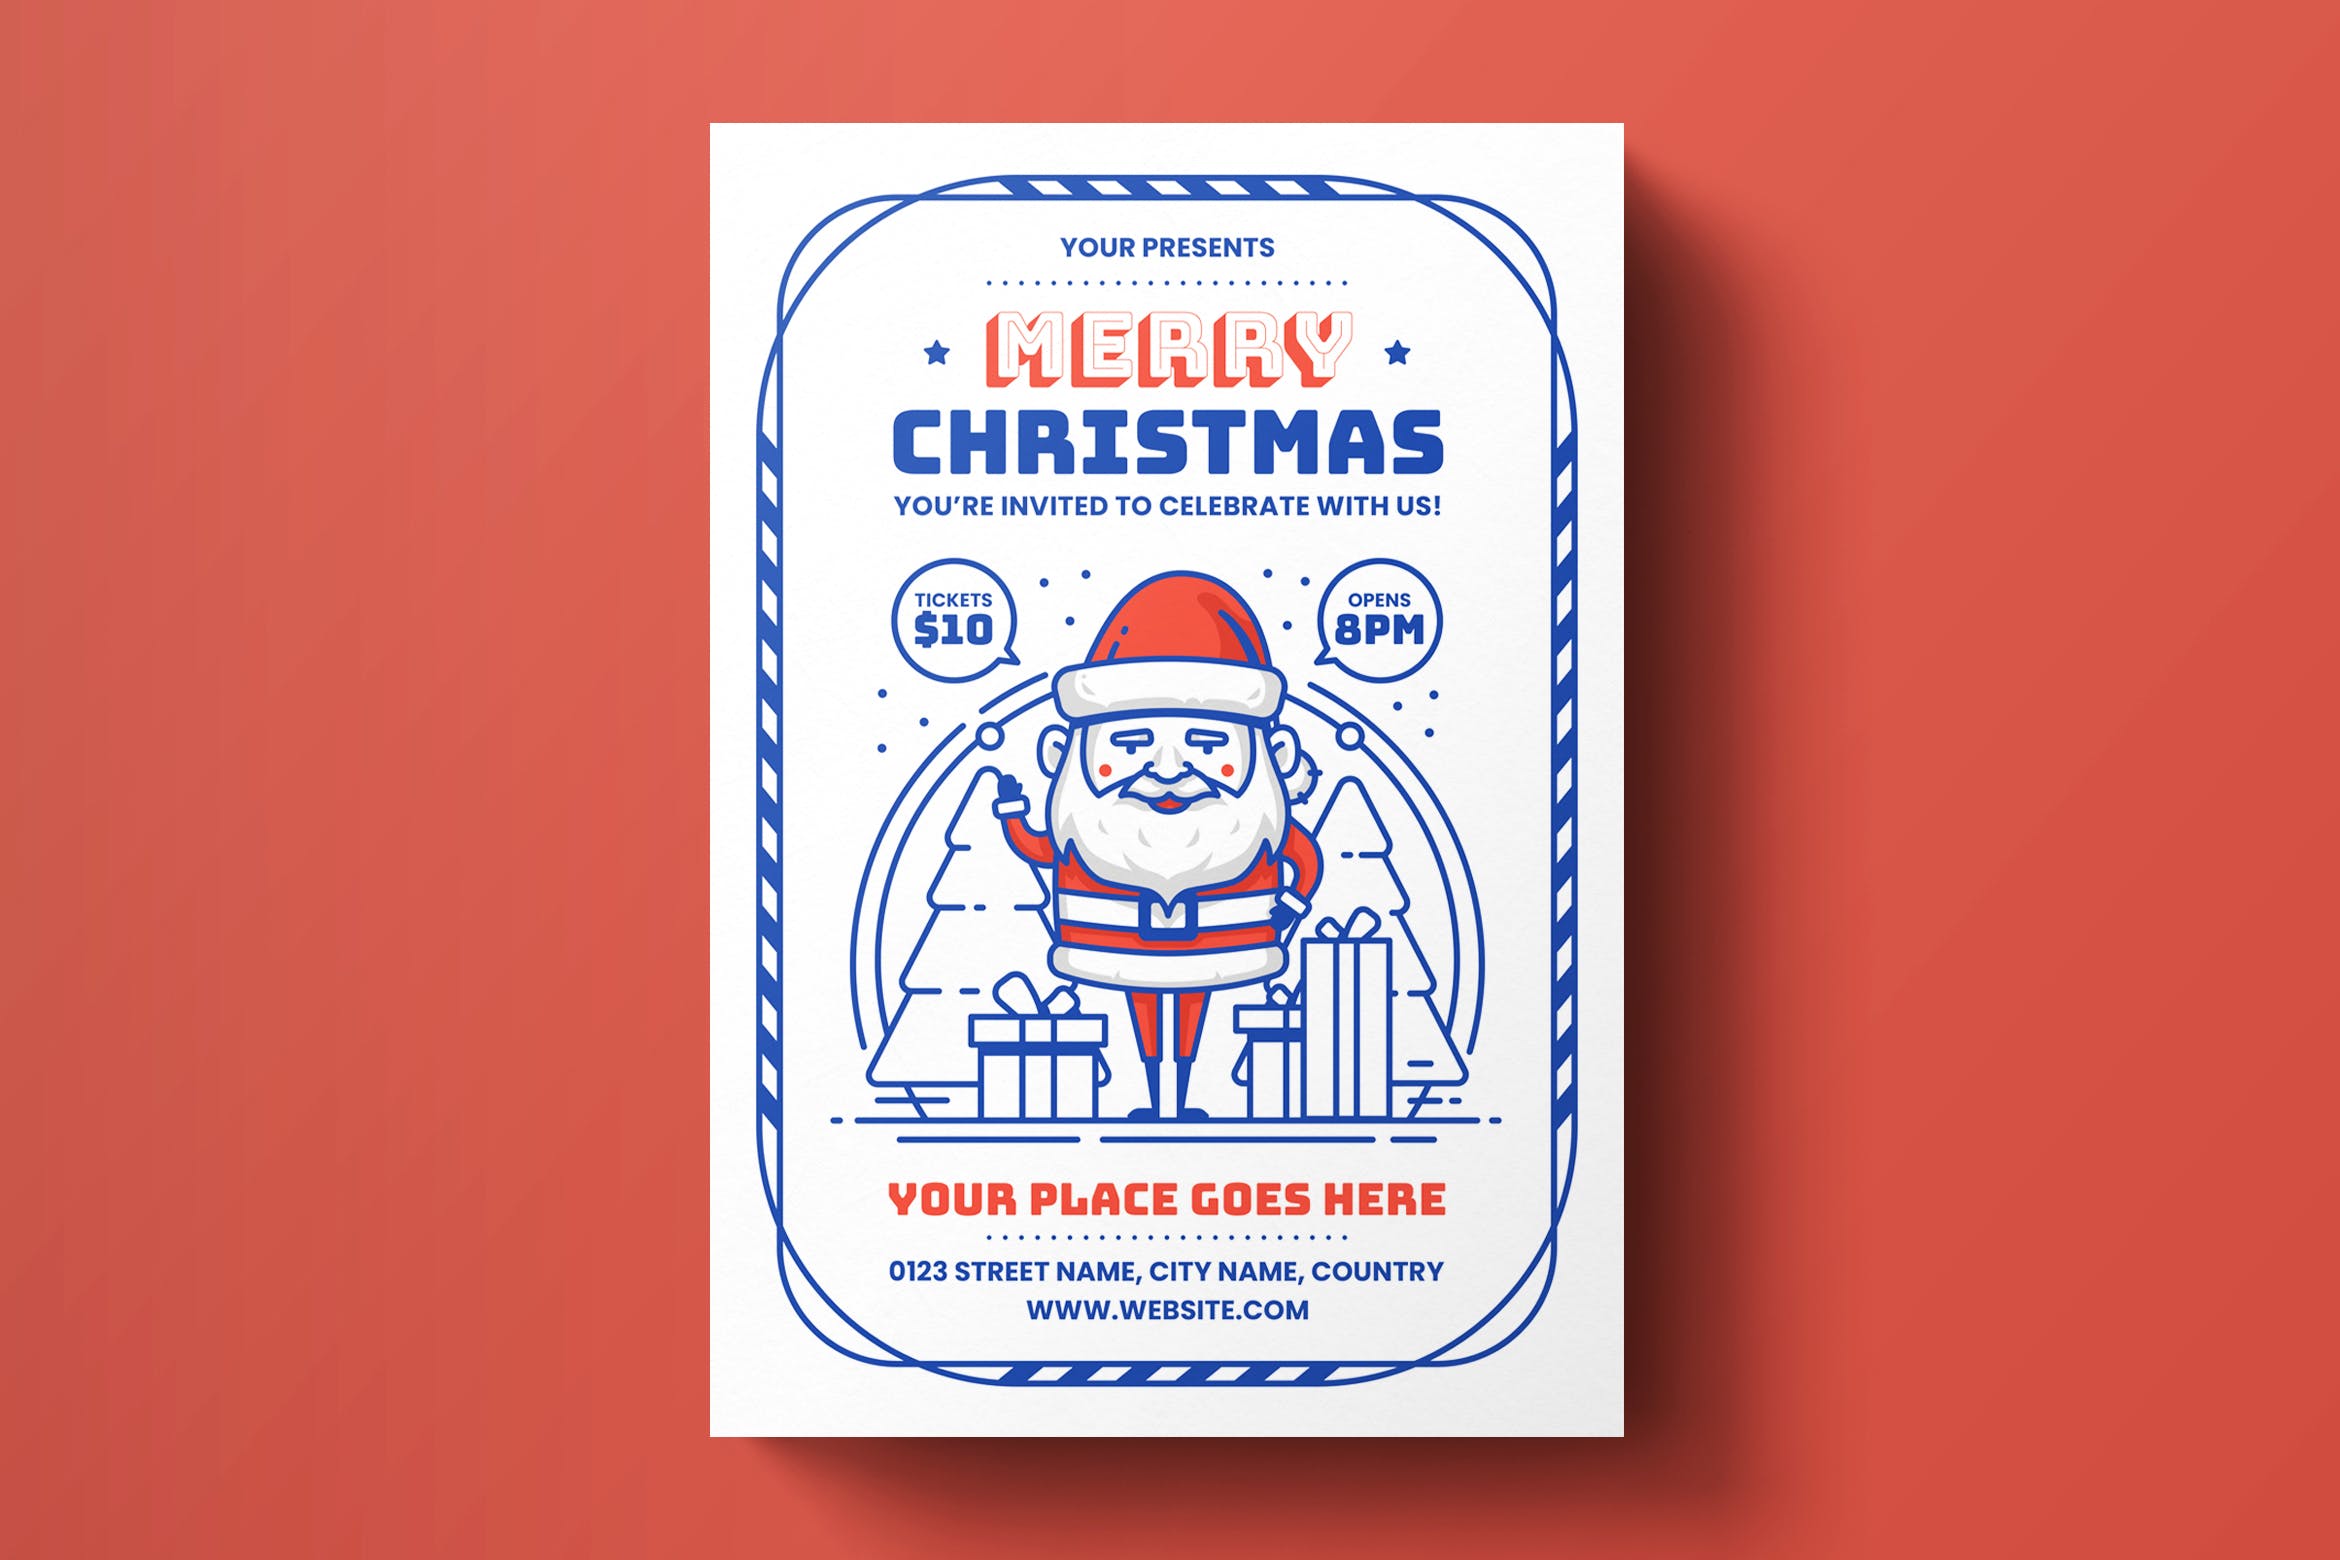 创意圣诞节主题海报传单设计模板素材 Christmas Flyer Template插图